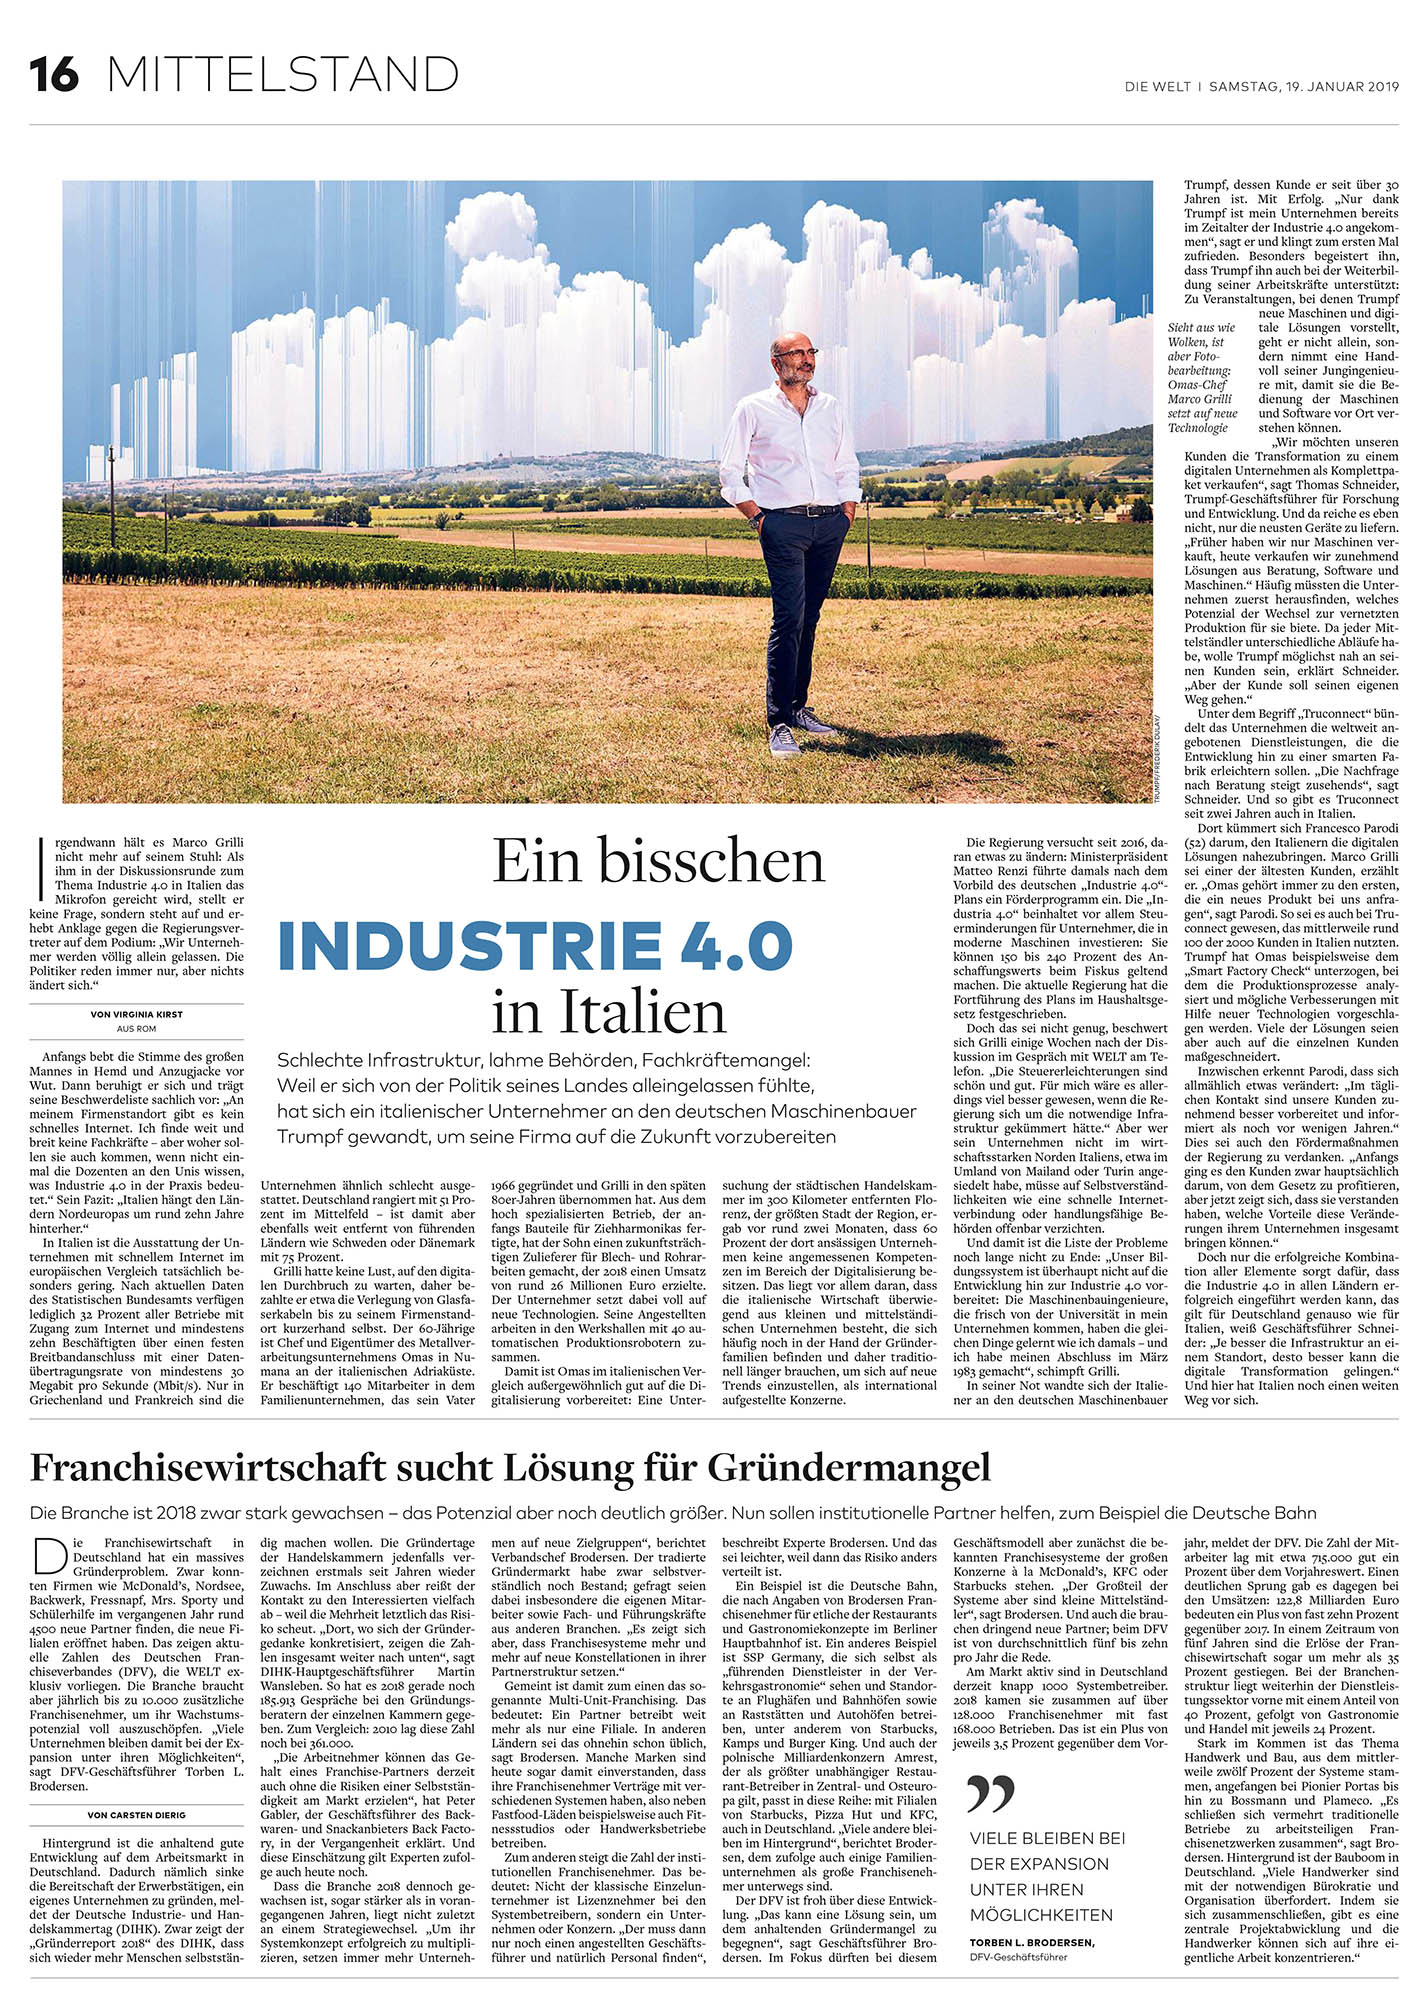 2019_01_20 Germania Industria 4.0 Corriere della sera tedesco